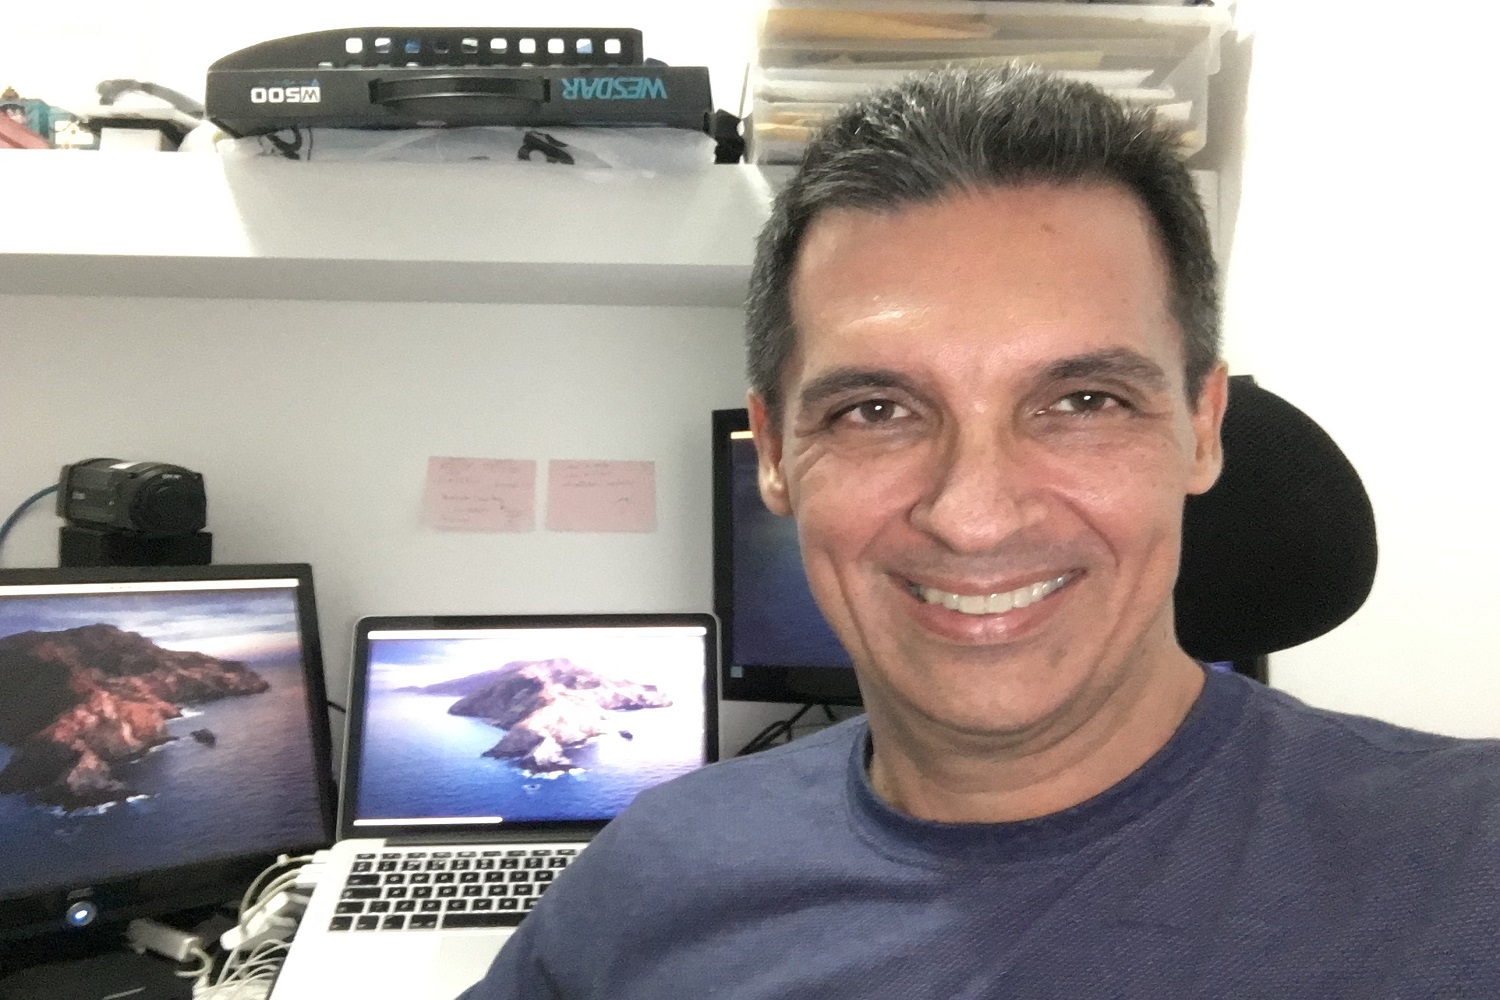 Coordenador de dois projetos da área da Robótica, o professor Eduardo Oliveira Freire está contando com sistema inteligente para execução das suas ações. ( foto: arquivo pessoal)